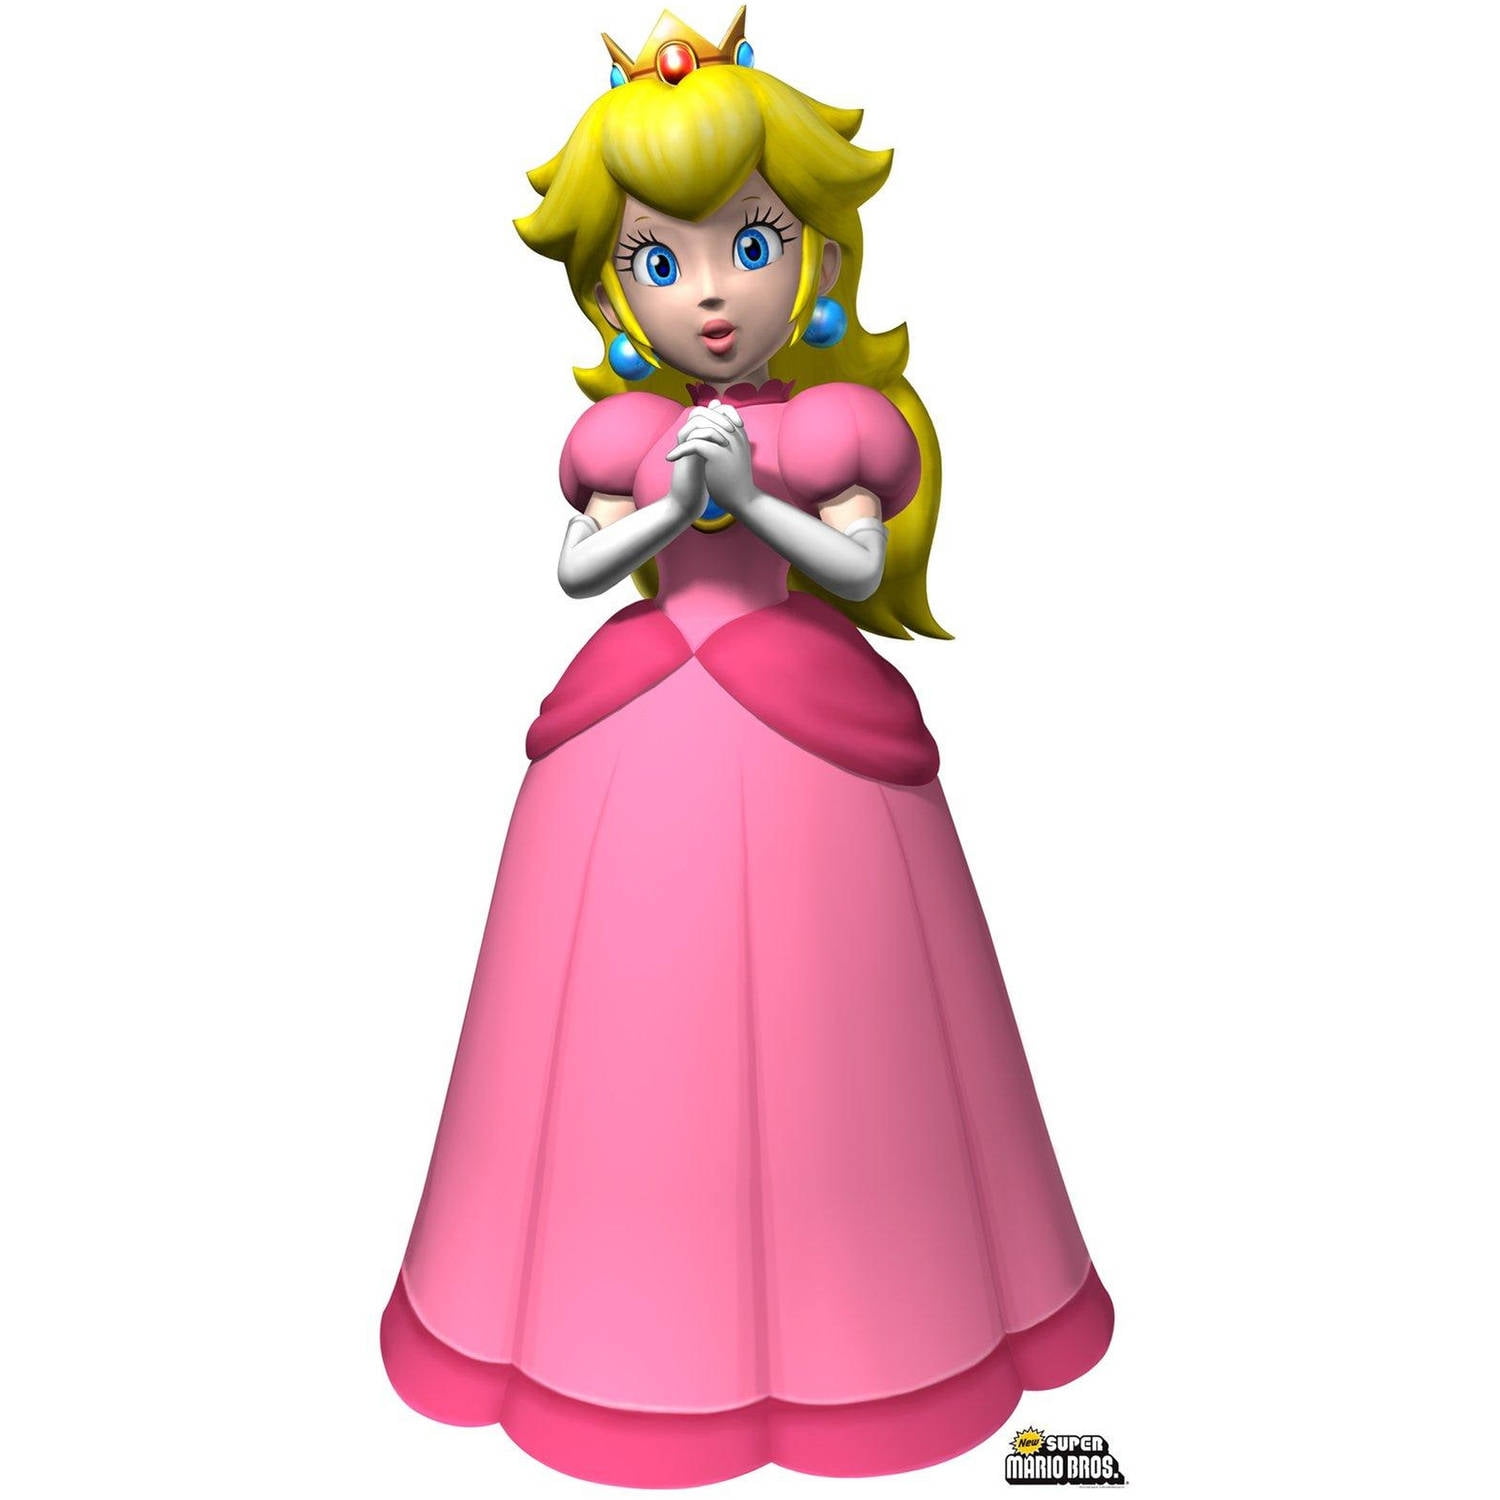 Super Mario Bros. Princess Peach Standup, 5' Tall